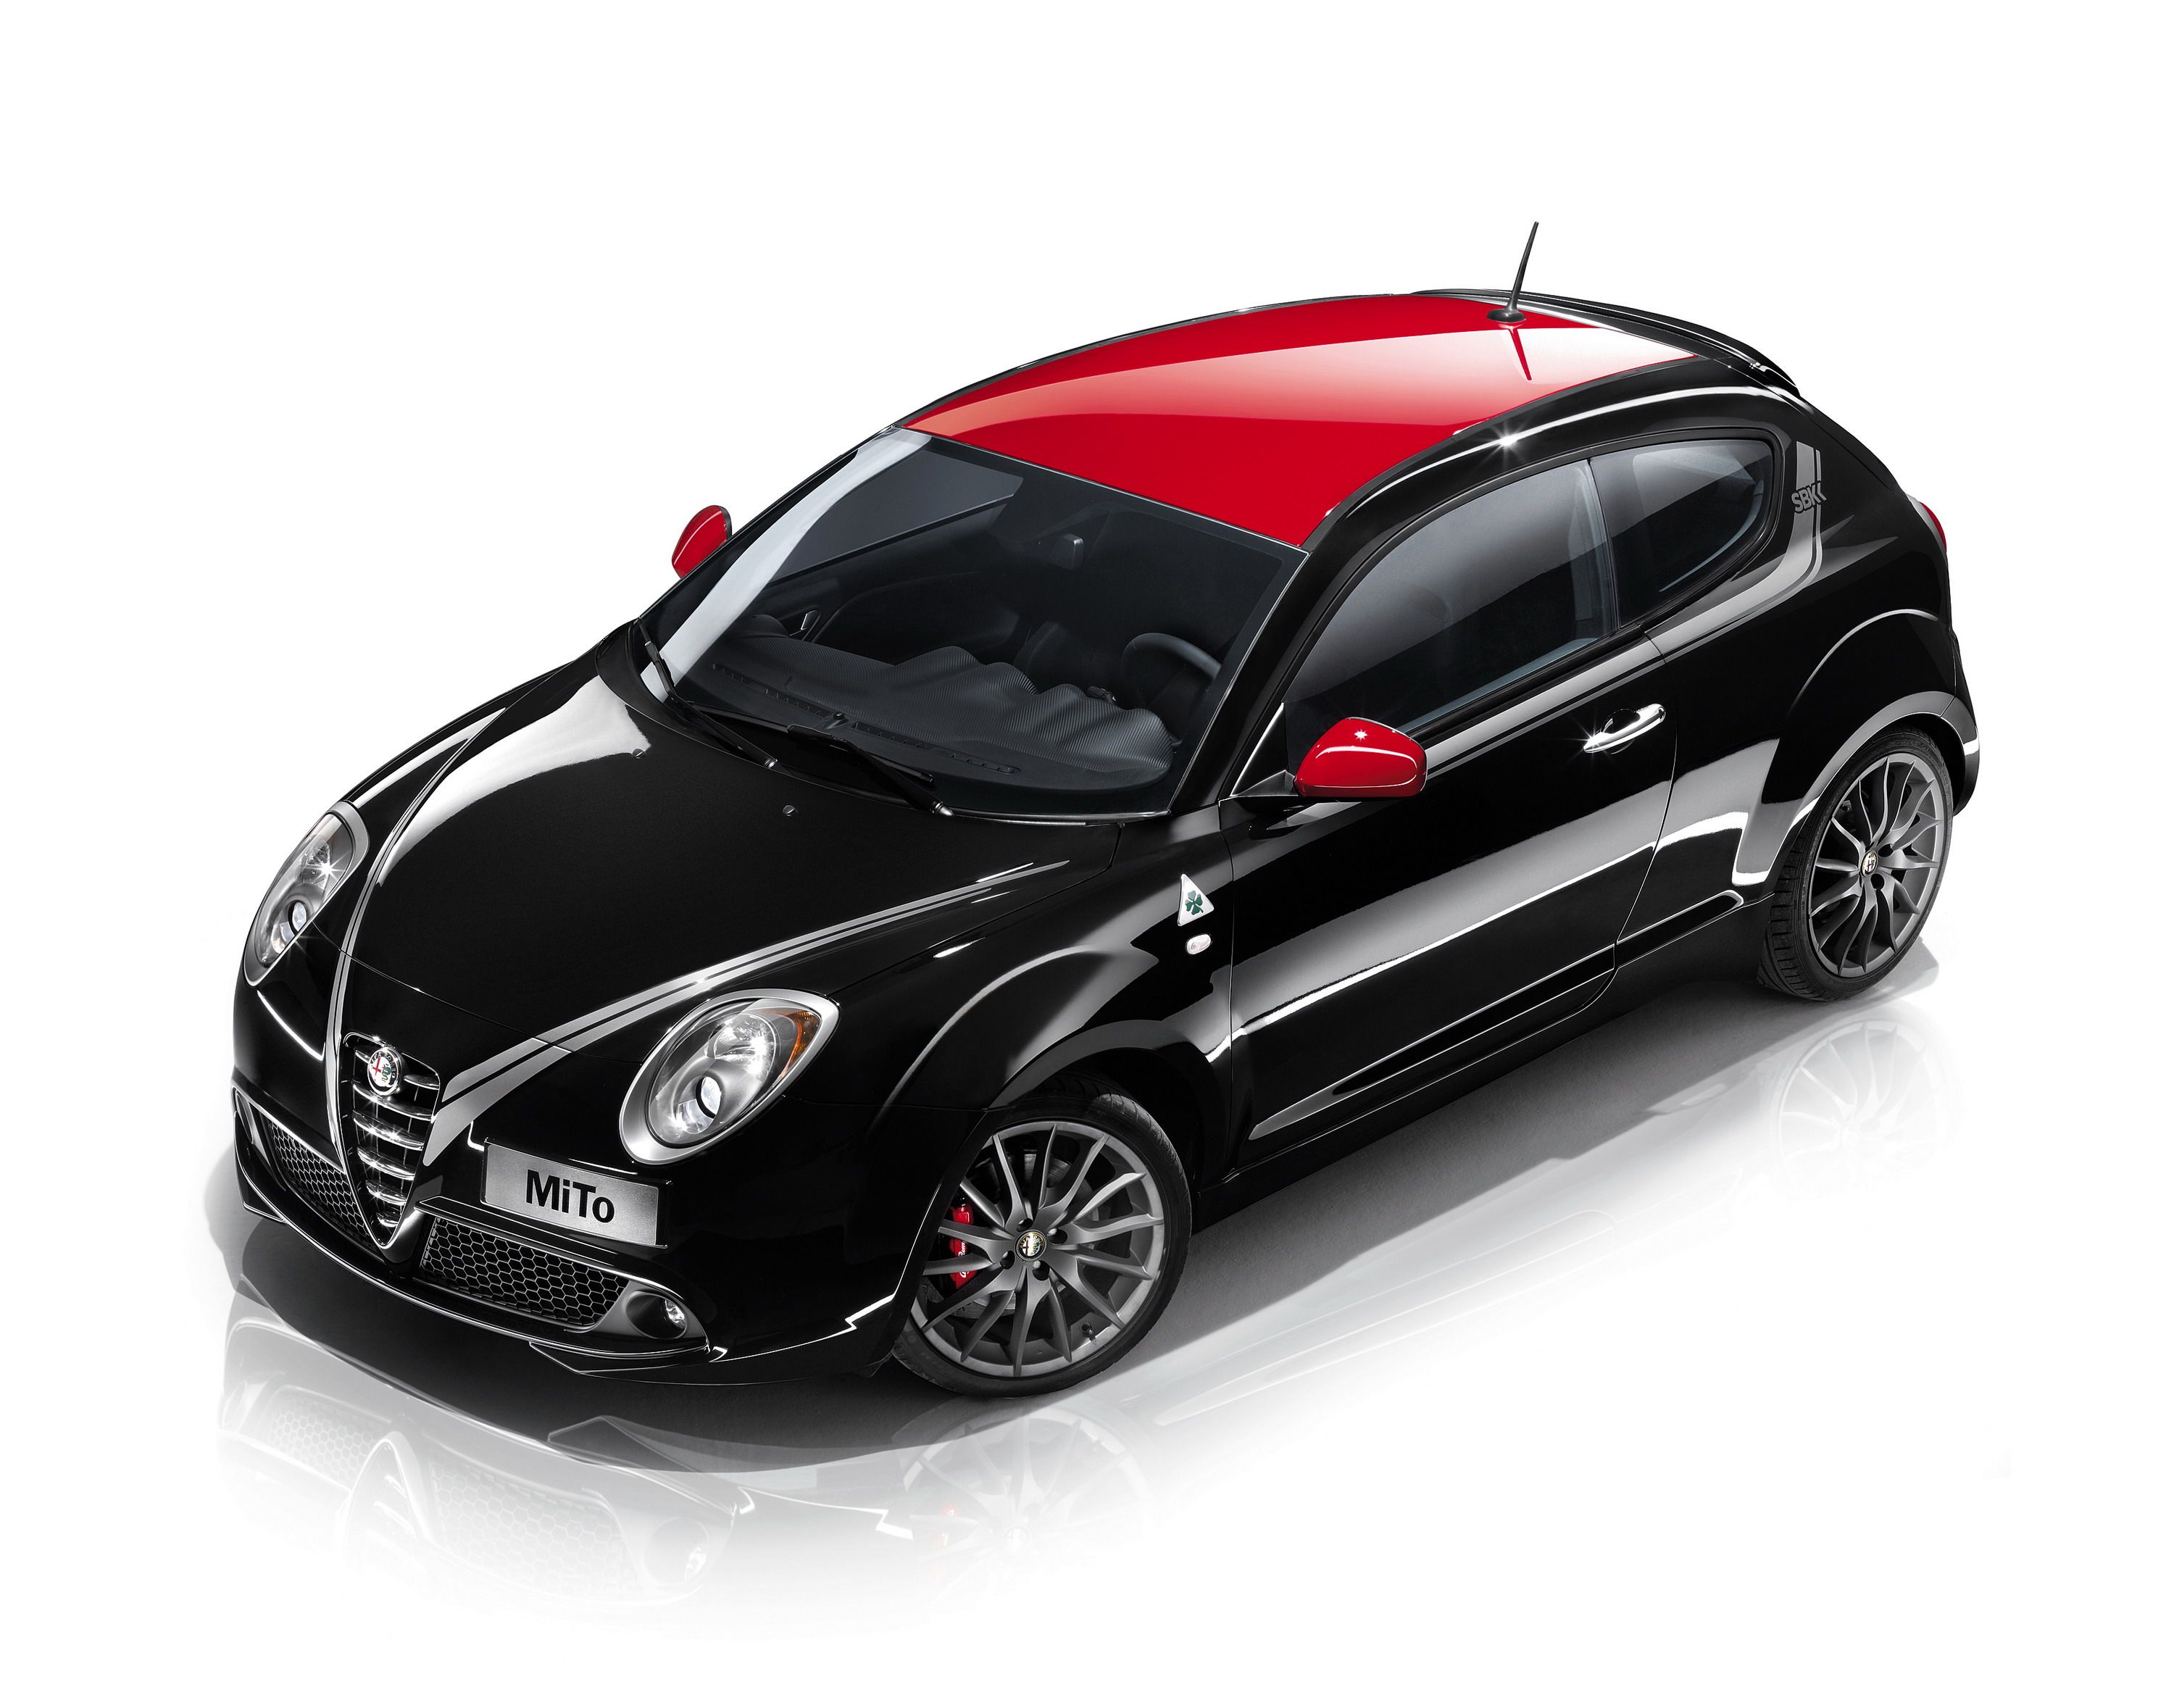 2012 Alfa Romeo Mito SBK Limited Edition